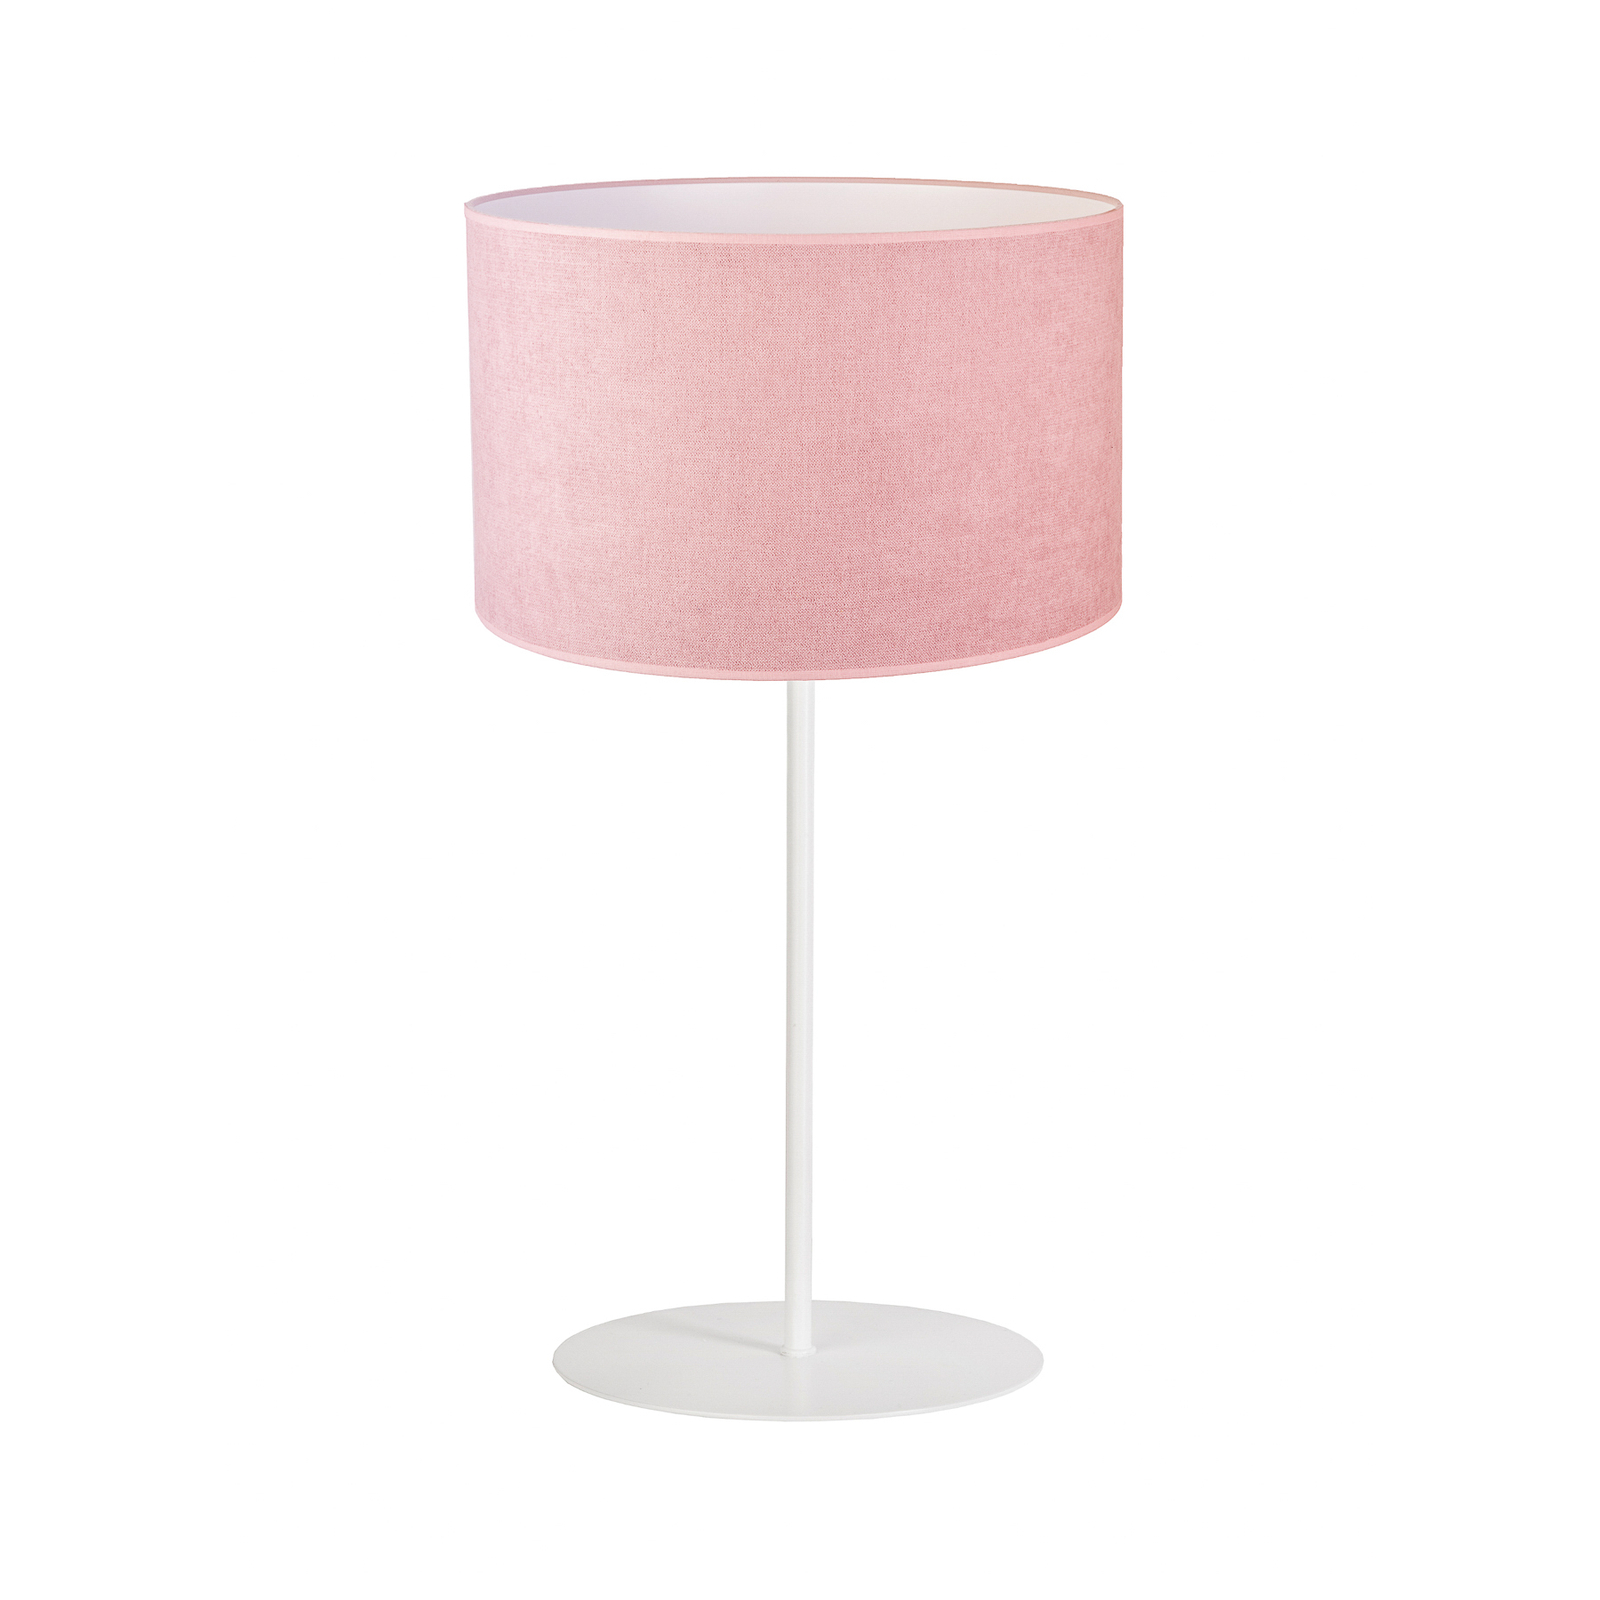 Bordlampe Pastell Roller høyde 50 cm rosa